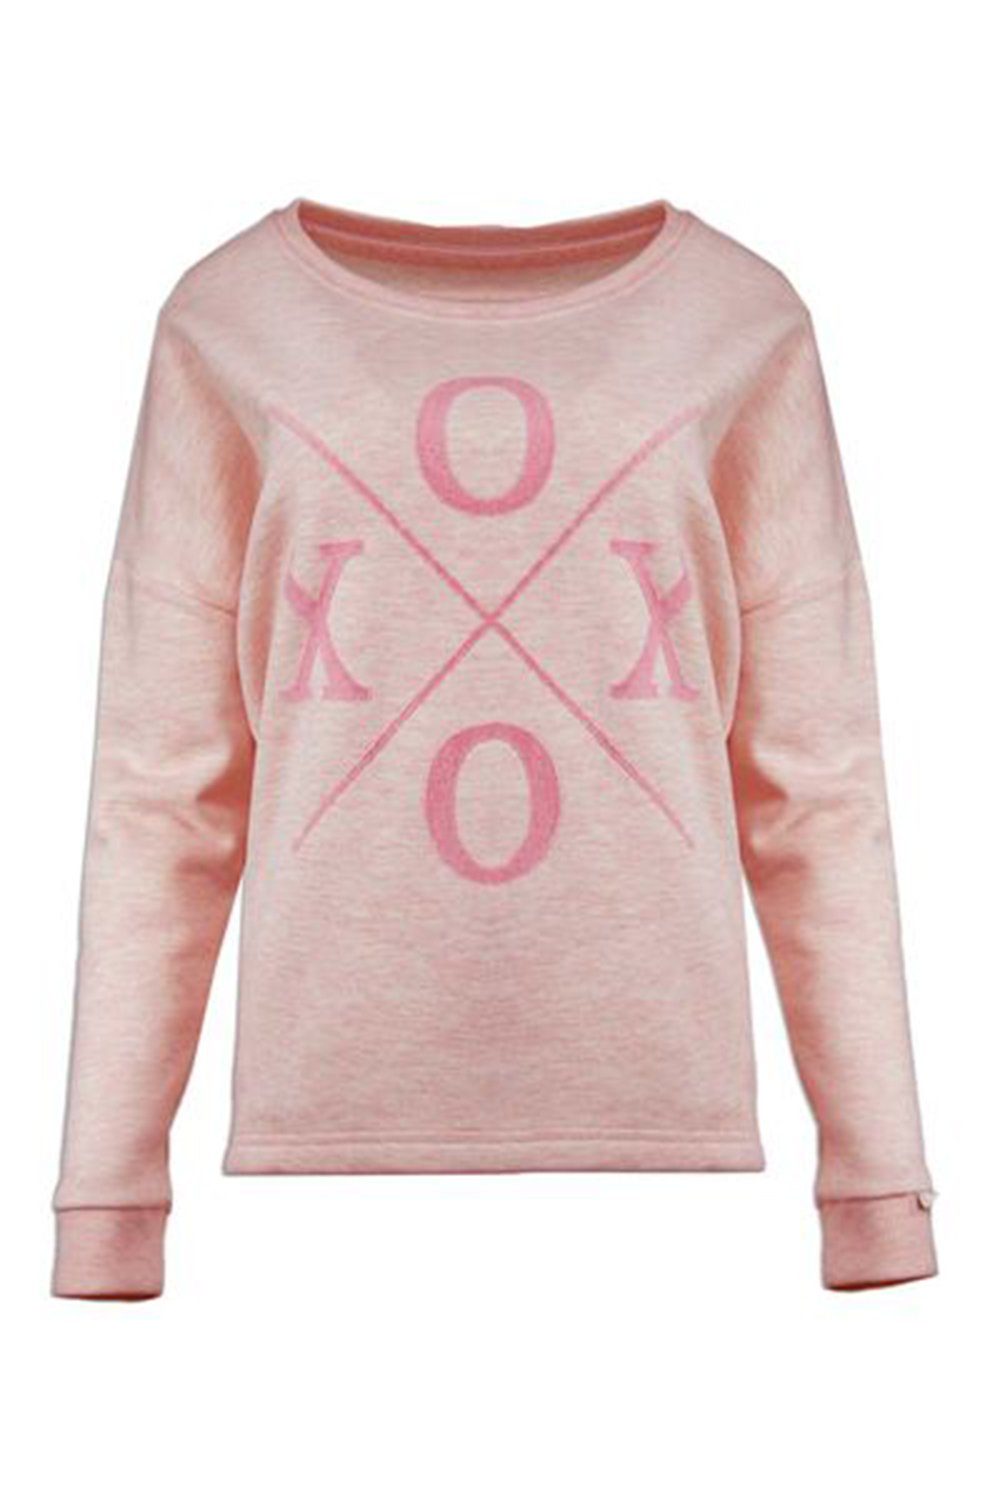 XOX Hoodie XOX Sweatshirt Rundhals, Pullover, Longsleeve rosé melange -  Fair Trade, Oberteil, Damenmode